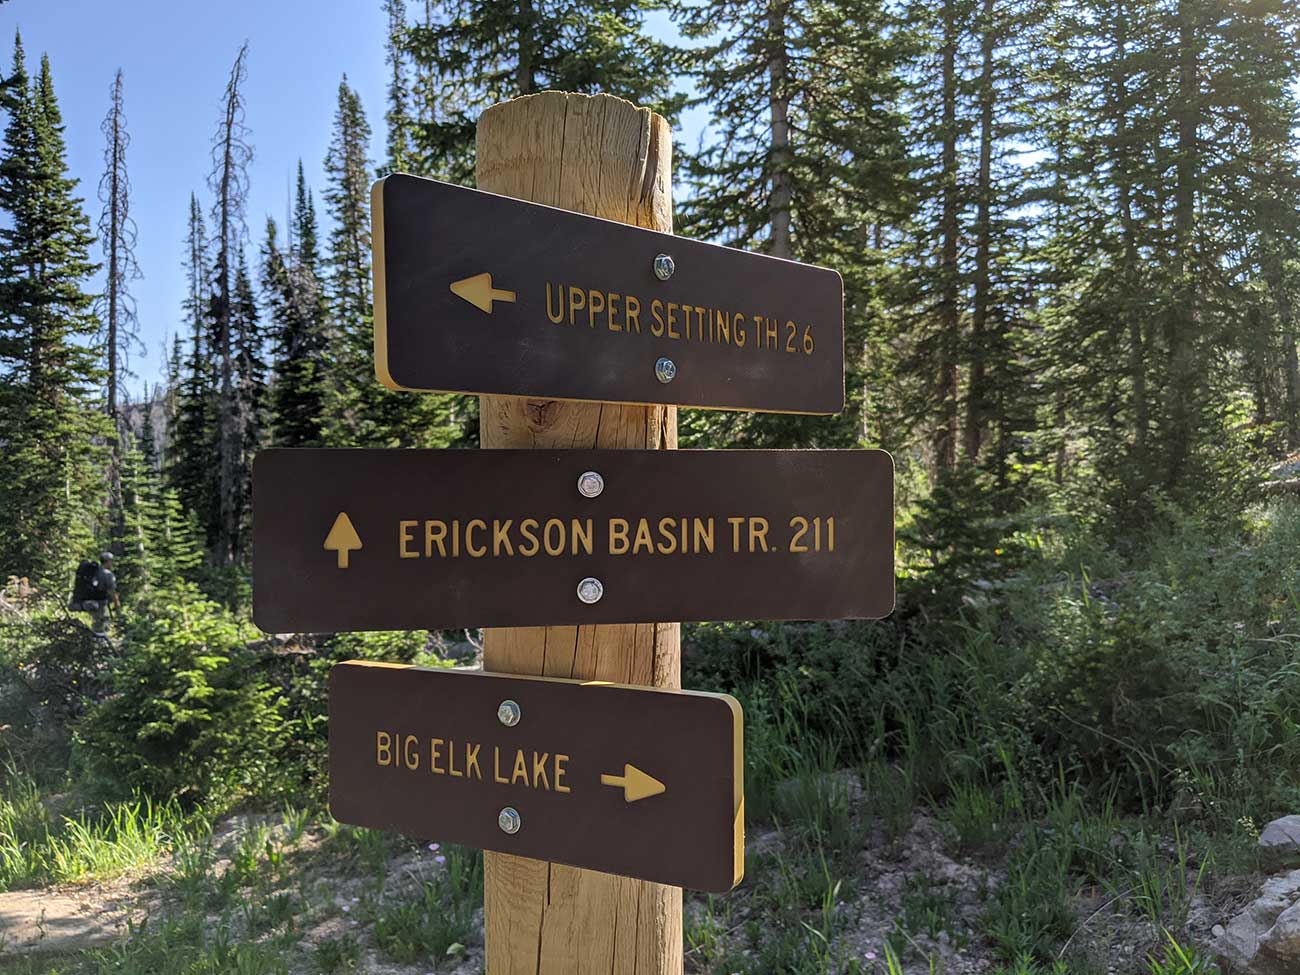 Erickson Basin Trail